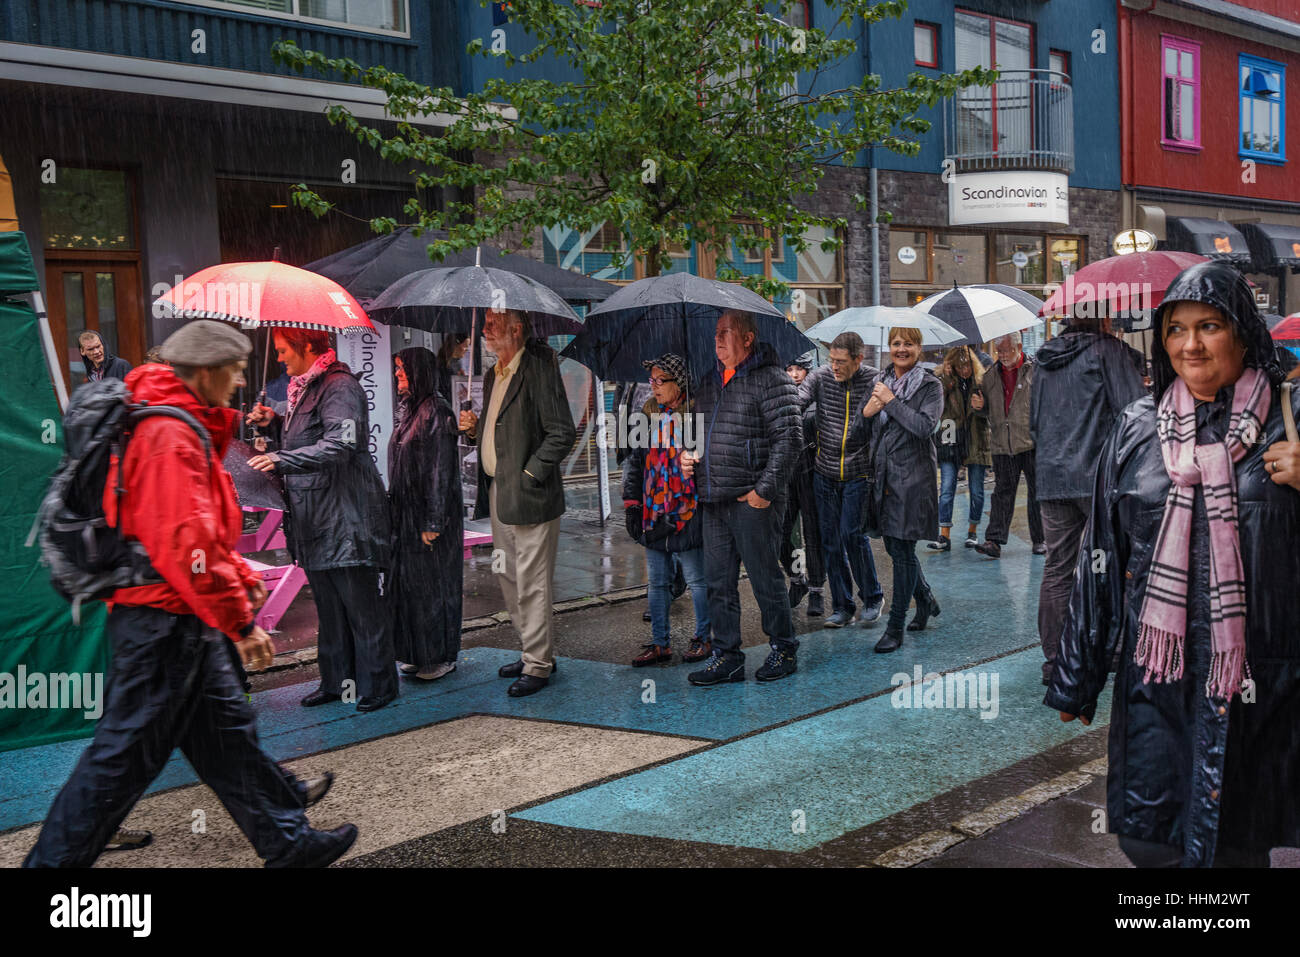 Massen zu Fuß Innenstadt an regnerischen Tag. Kulturfestival, bekannt als Menningarnott, Reykjavik, Island. Stockfoto